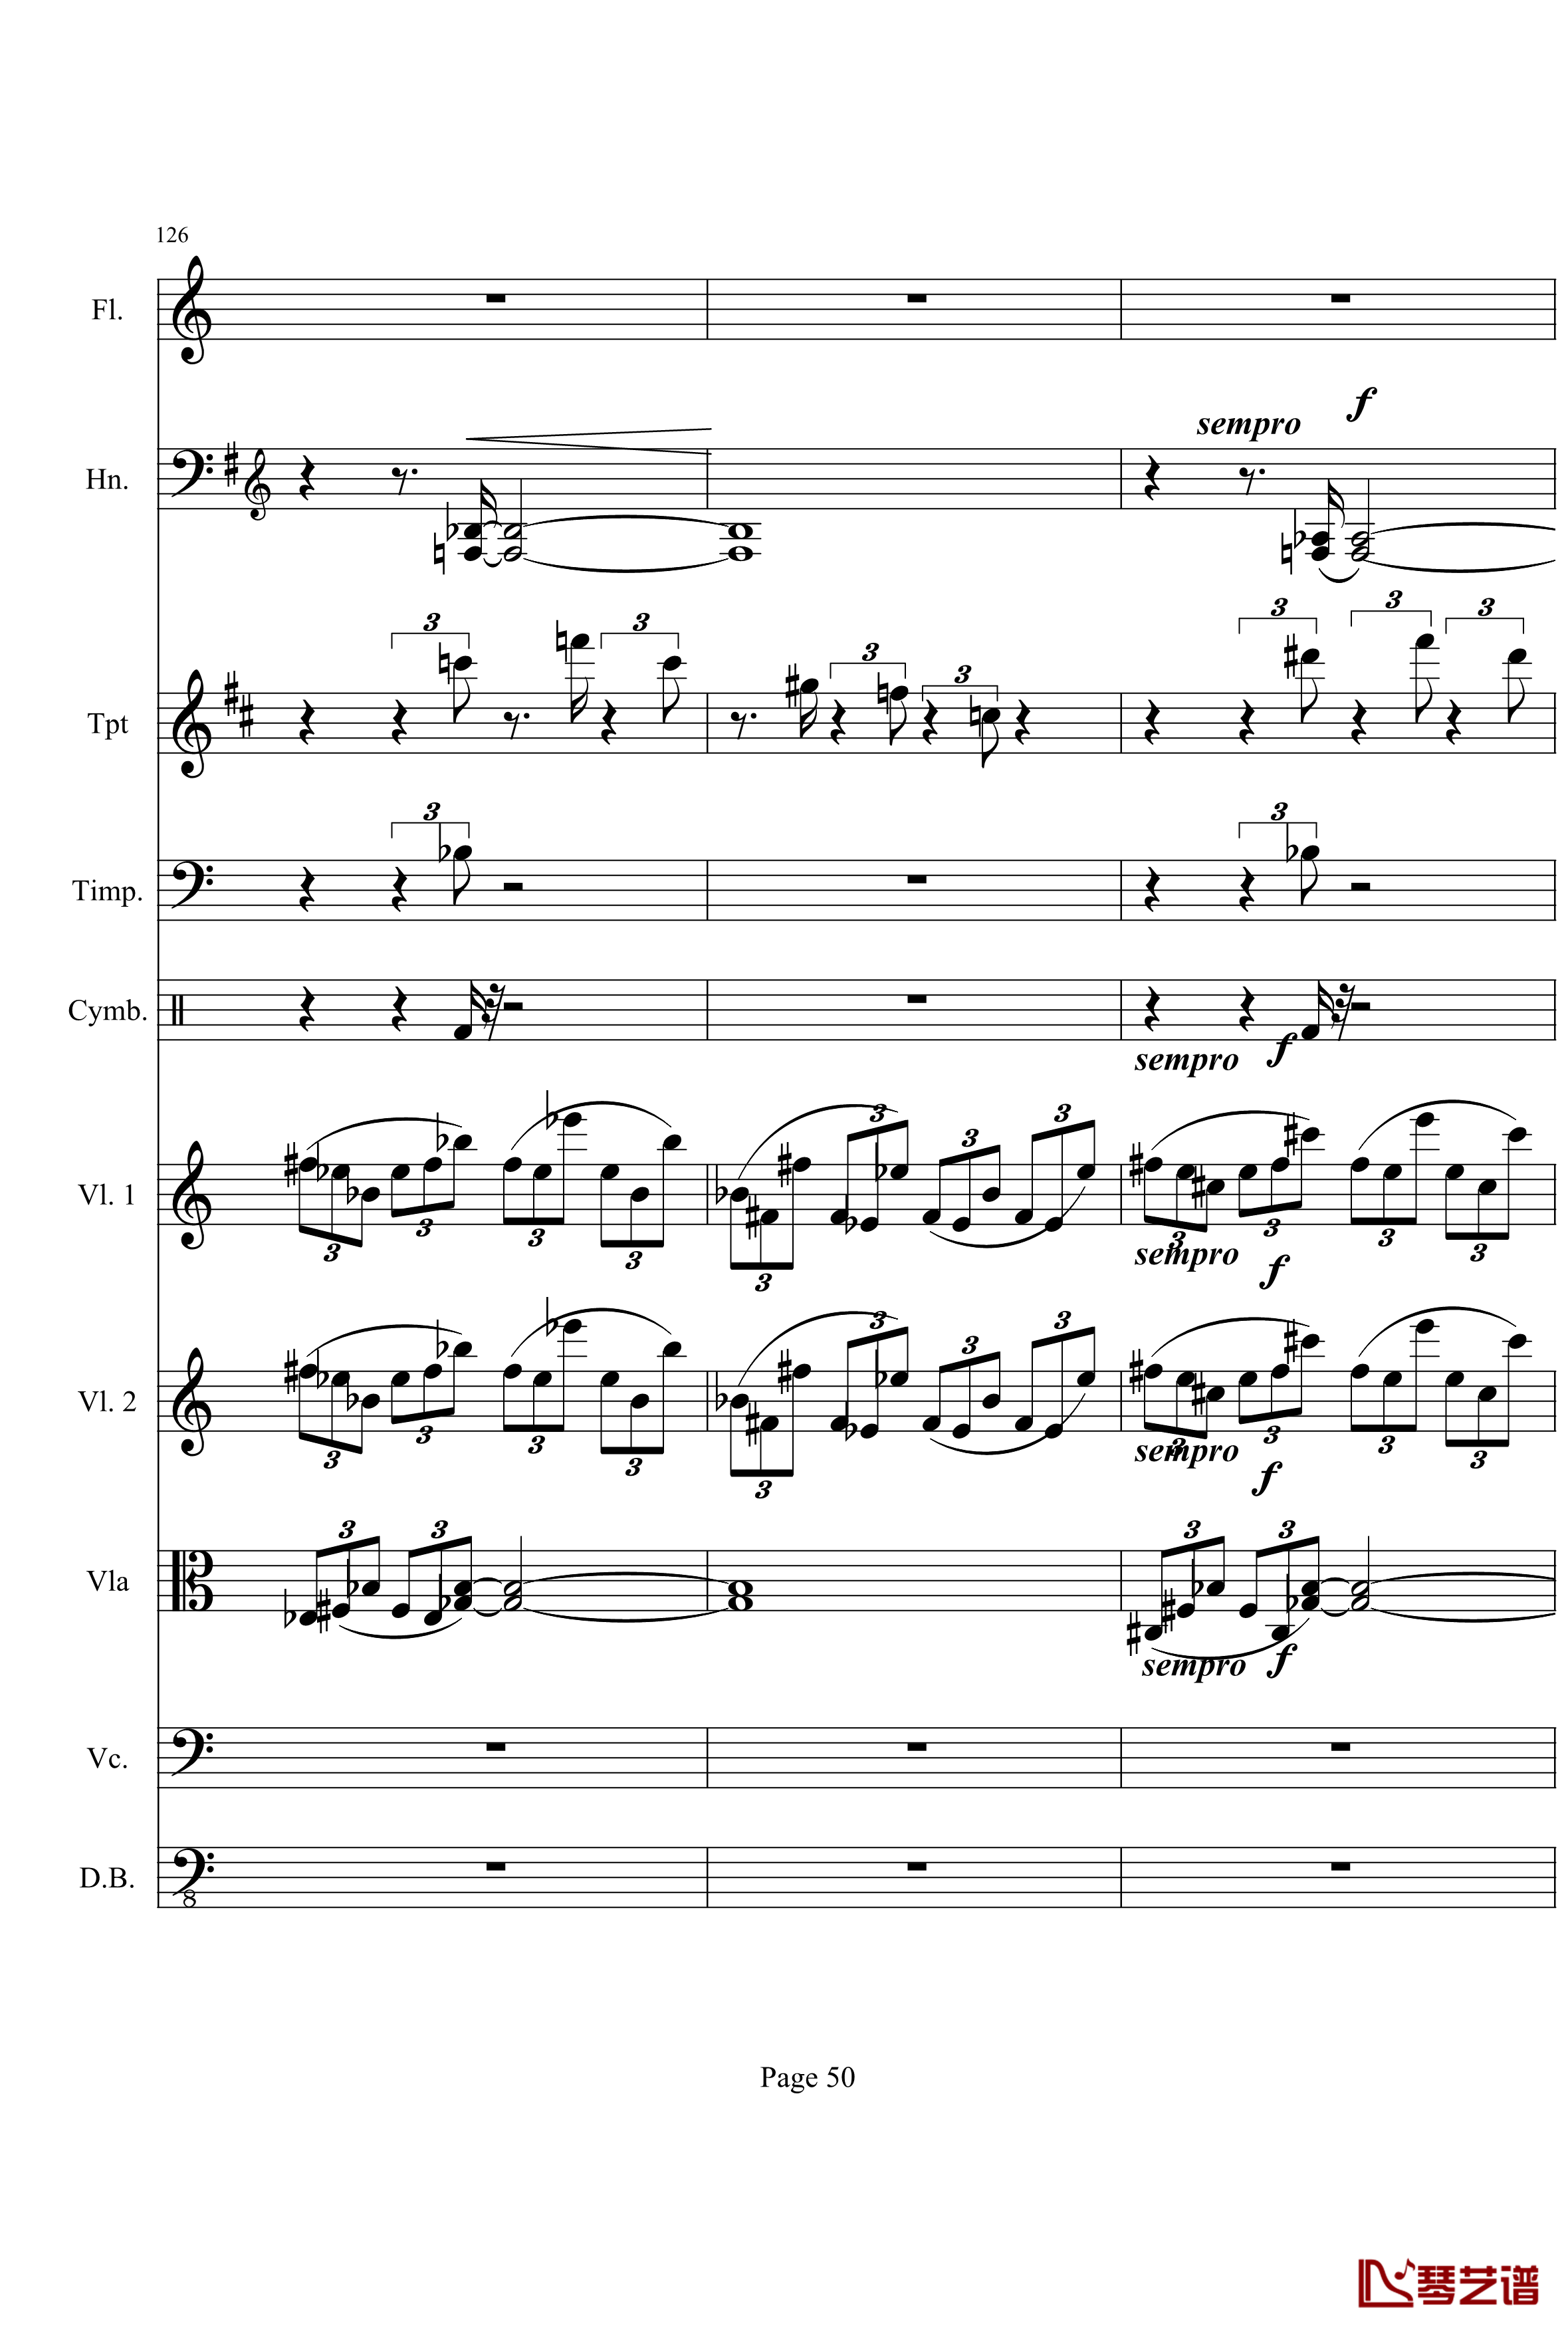 奏鸣曲之交响钢琴谱-第21-Ⅰ-贝多芬-beethoven50